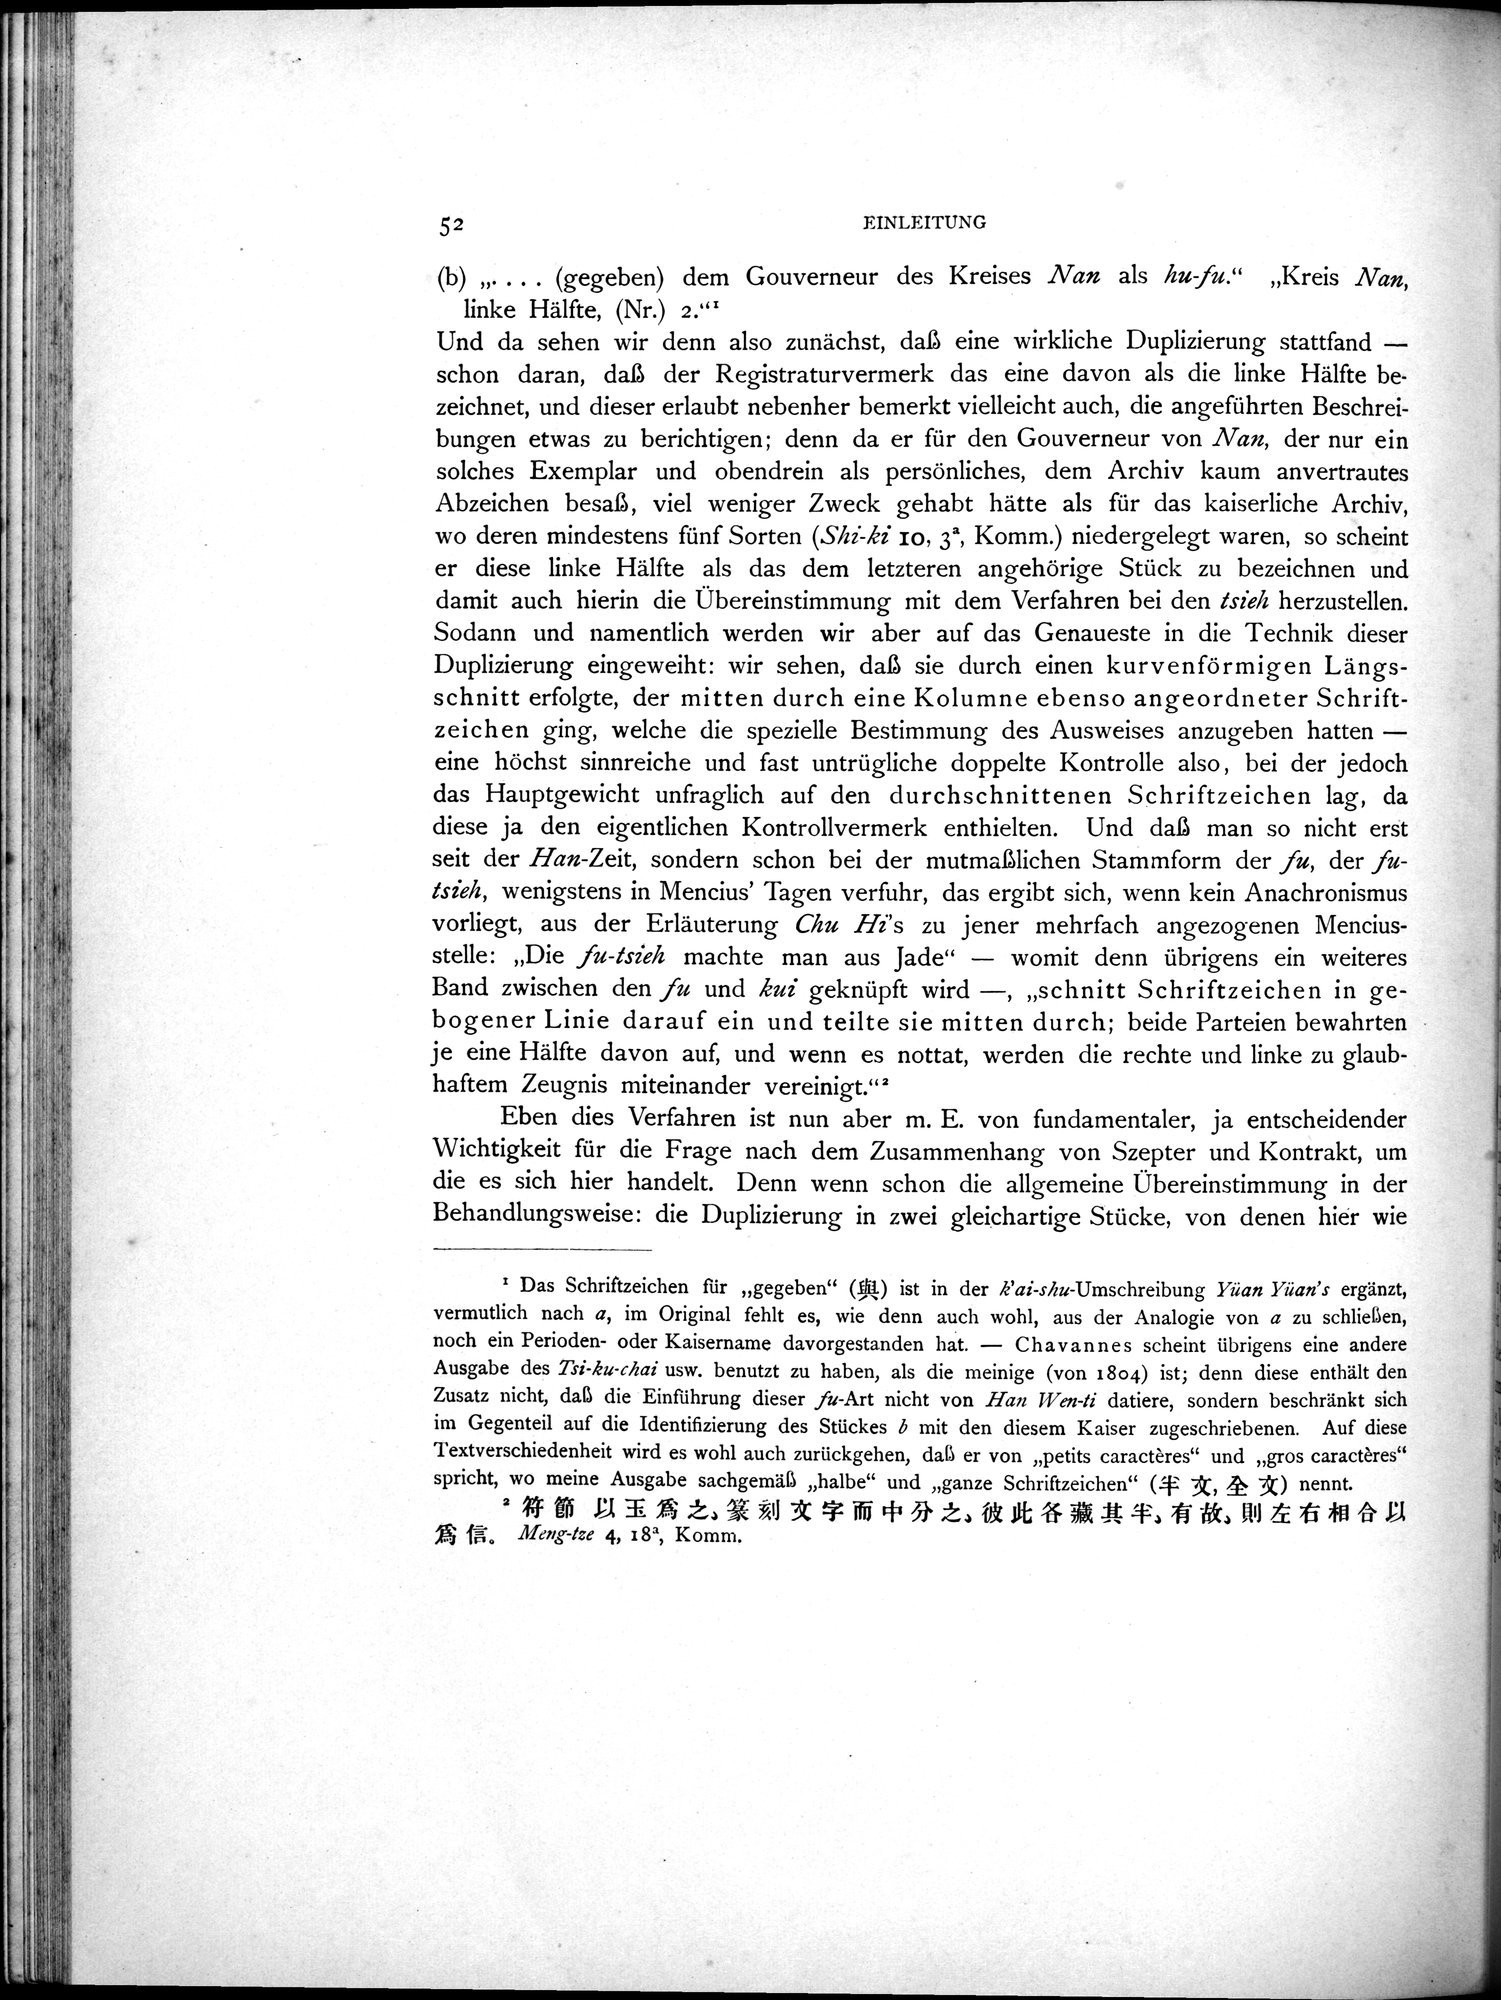 Die Chinesischen Handschriften- und sonstigen Kleinfunde Sven Hedins in Lou-lan : vol.1 / Page 76 (Grayscale High Resolution Image)